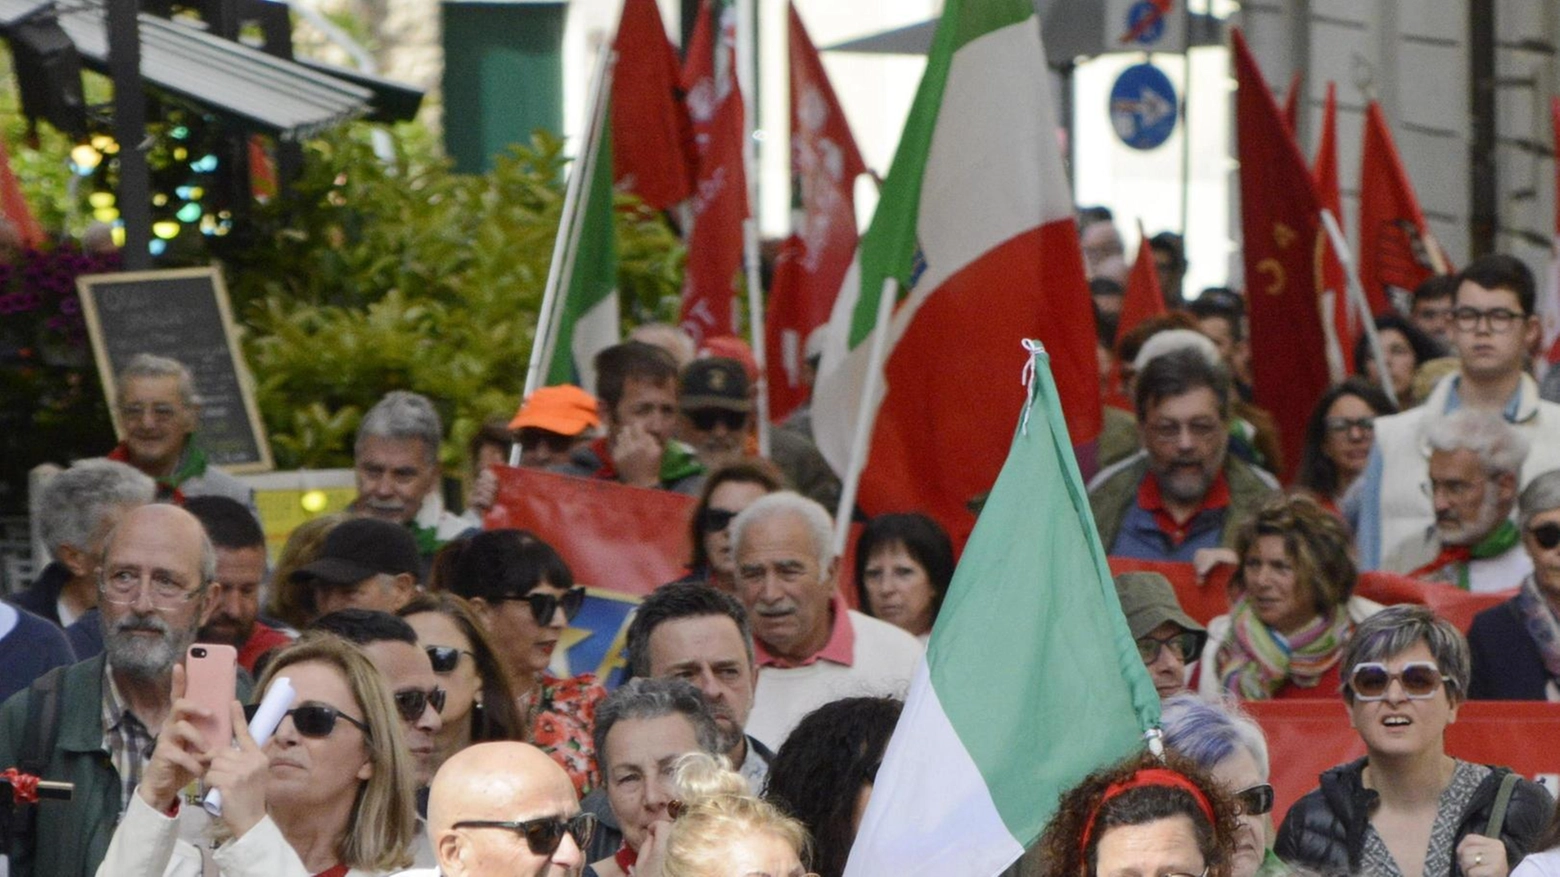 Il Partito Democratico di Senigallia aderisce alle celebrazioni del 25 Aprile organizzate dall'Anpi, sottolineando l'importanza di difendere i valori antifascisti e democratici minacciati dall'attuale contesto politico.